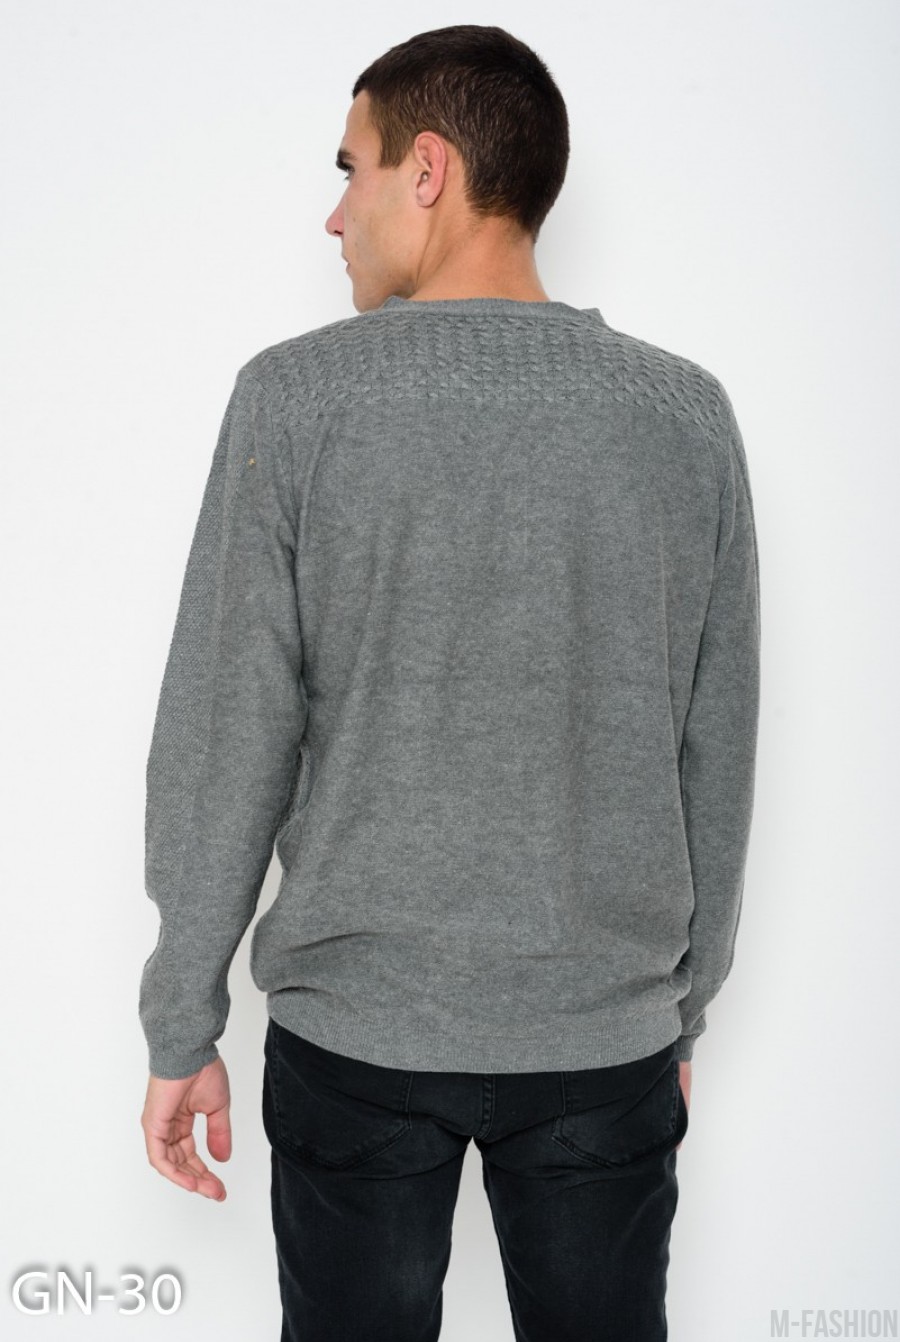 Серый свитер фактурной вязки с перфорацией и пуговицами на горловине- Фото 3